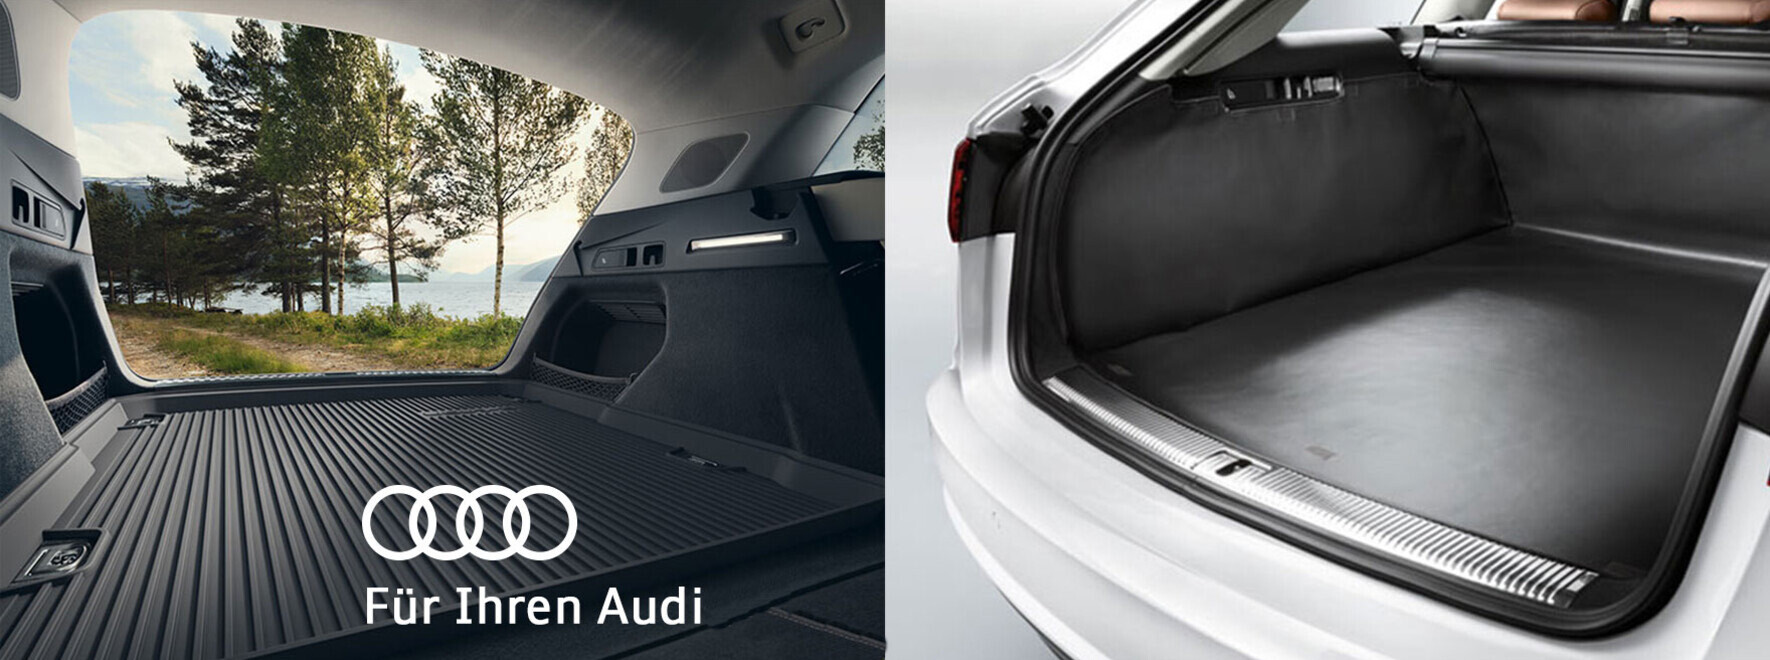 Fahrzeugschutz von Audi Original Zubehör für Ihren Audi | Gummifußmatte, Gepäckraumwanne, Ladekantenschutzfolie - Sets für Komfort & Schutz Ihres Audi